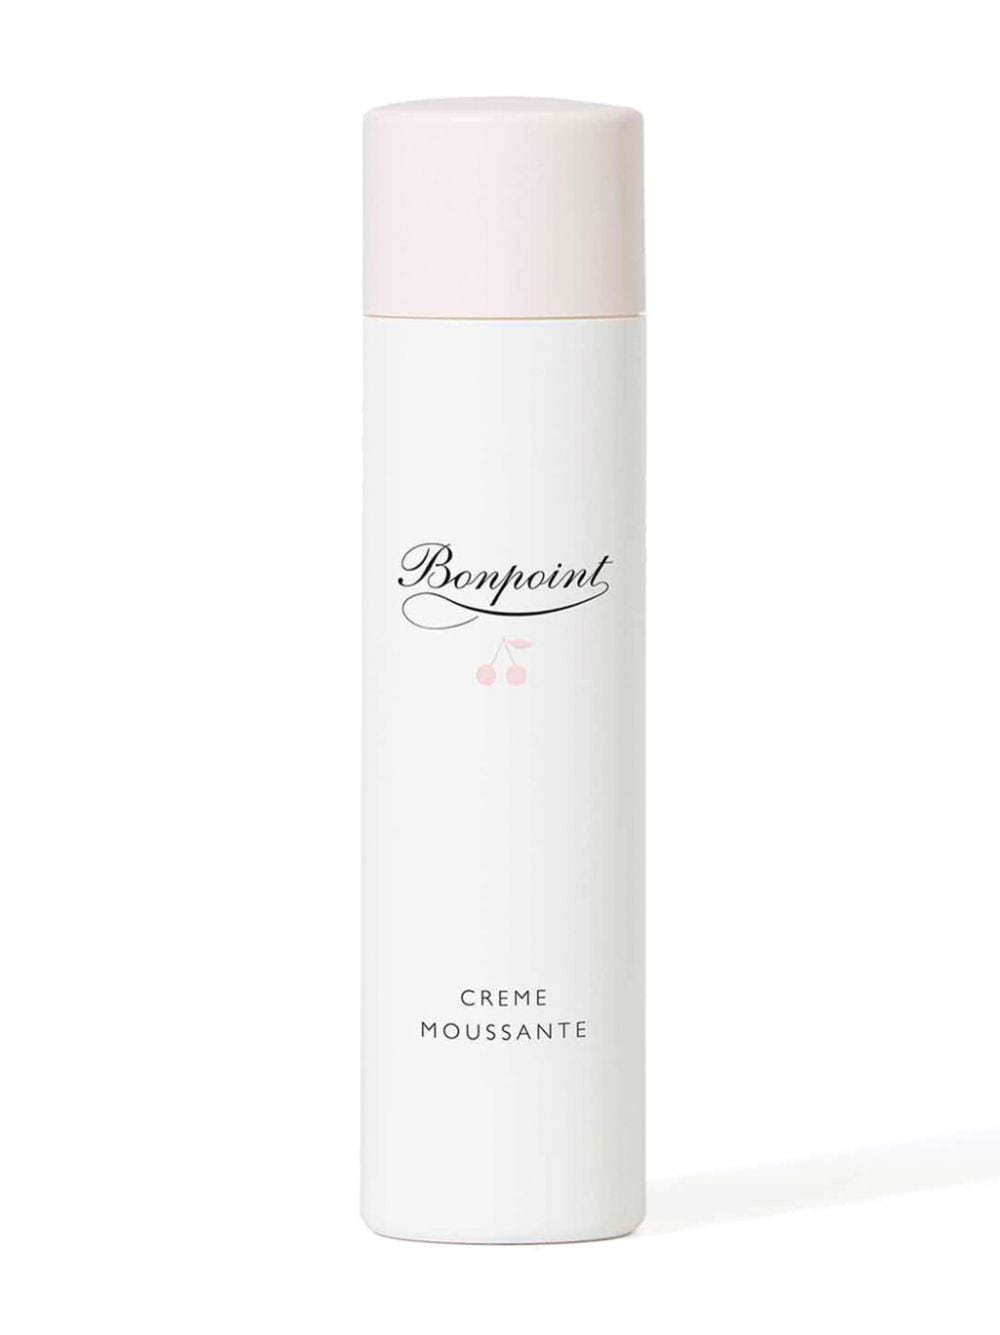 Bonpoint foaming cleansing cream (200ml) - White von Bonpoint